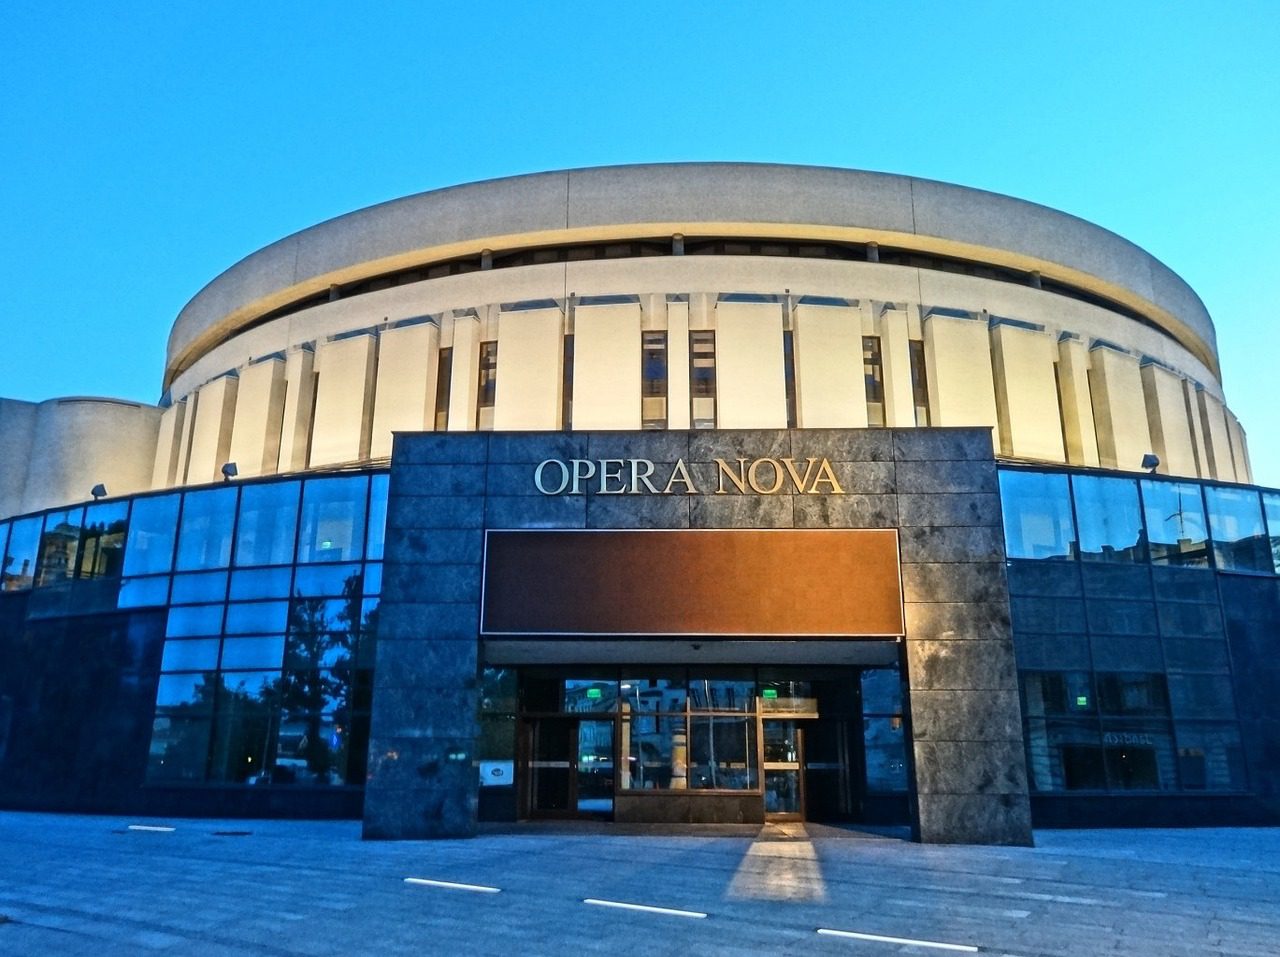 Opera Nova